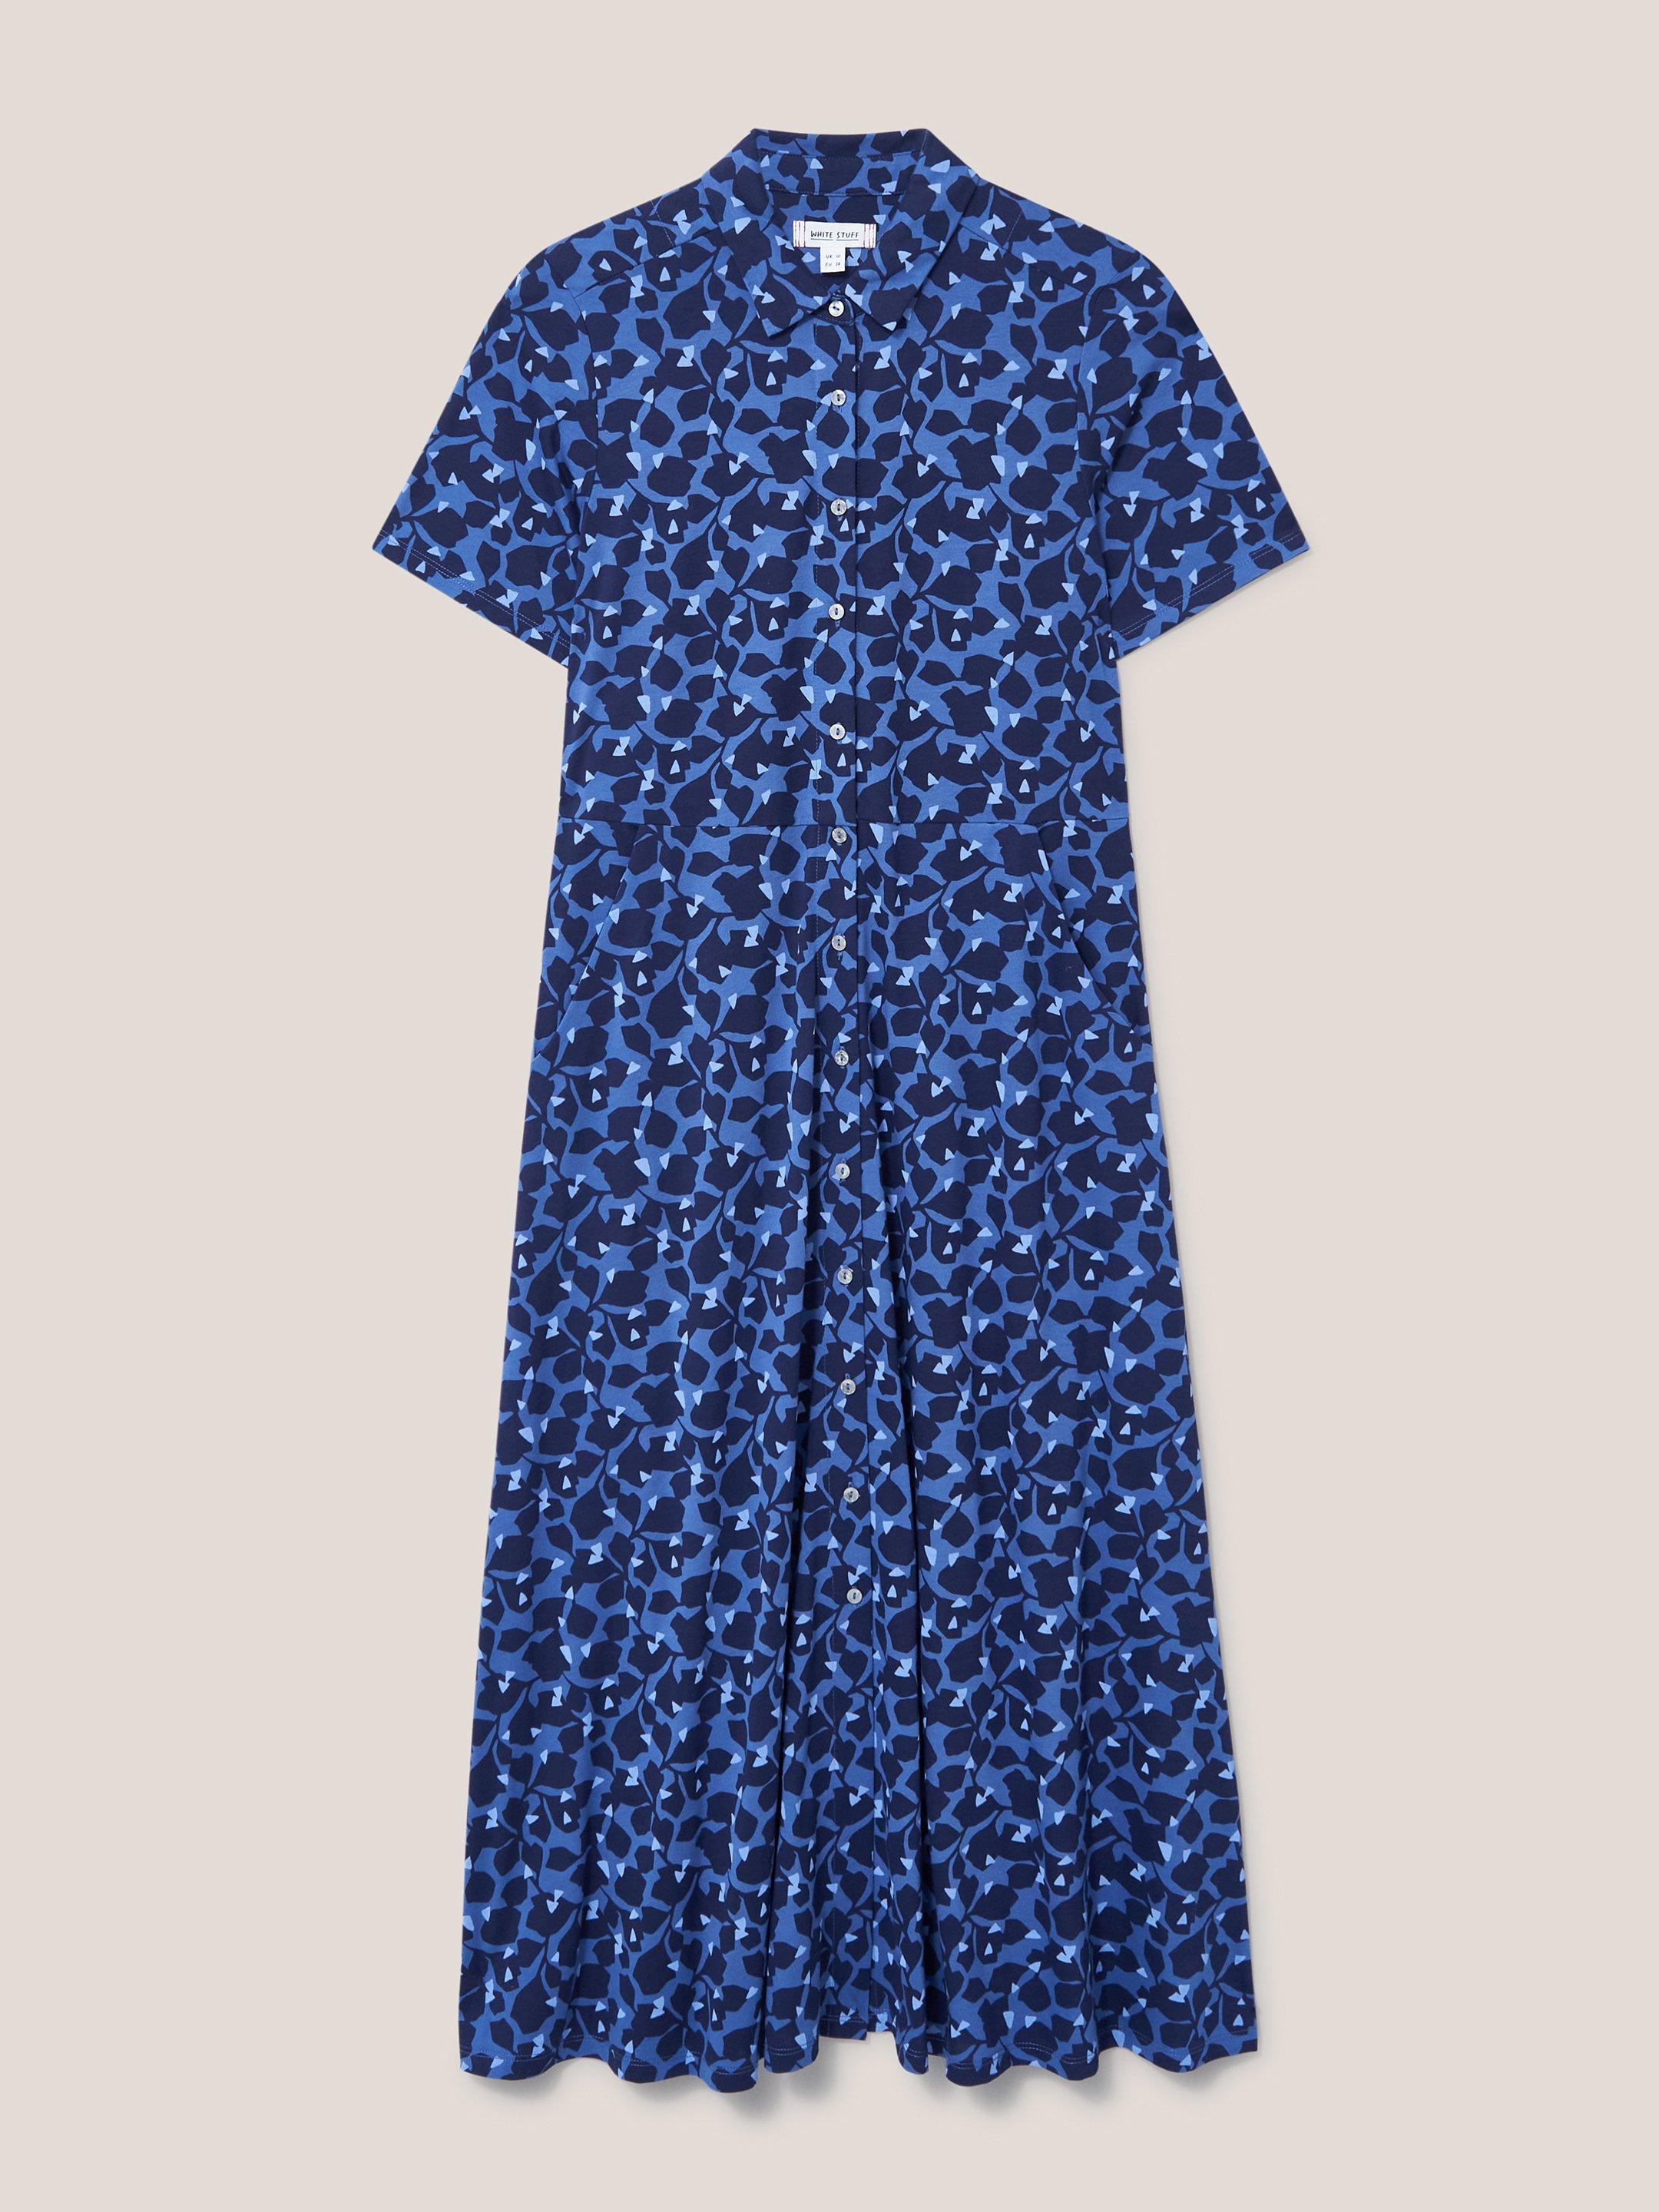 Rua Jersey Short Sleeve Shirt Dress in BLUE MLT - FLAT FRONT